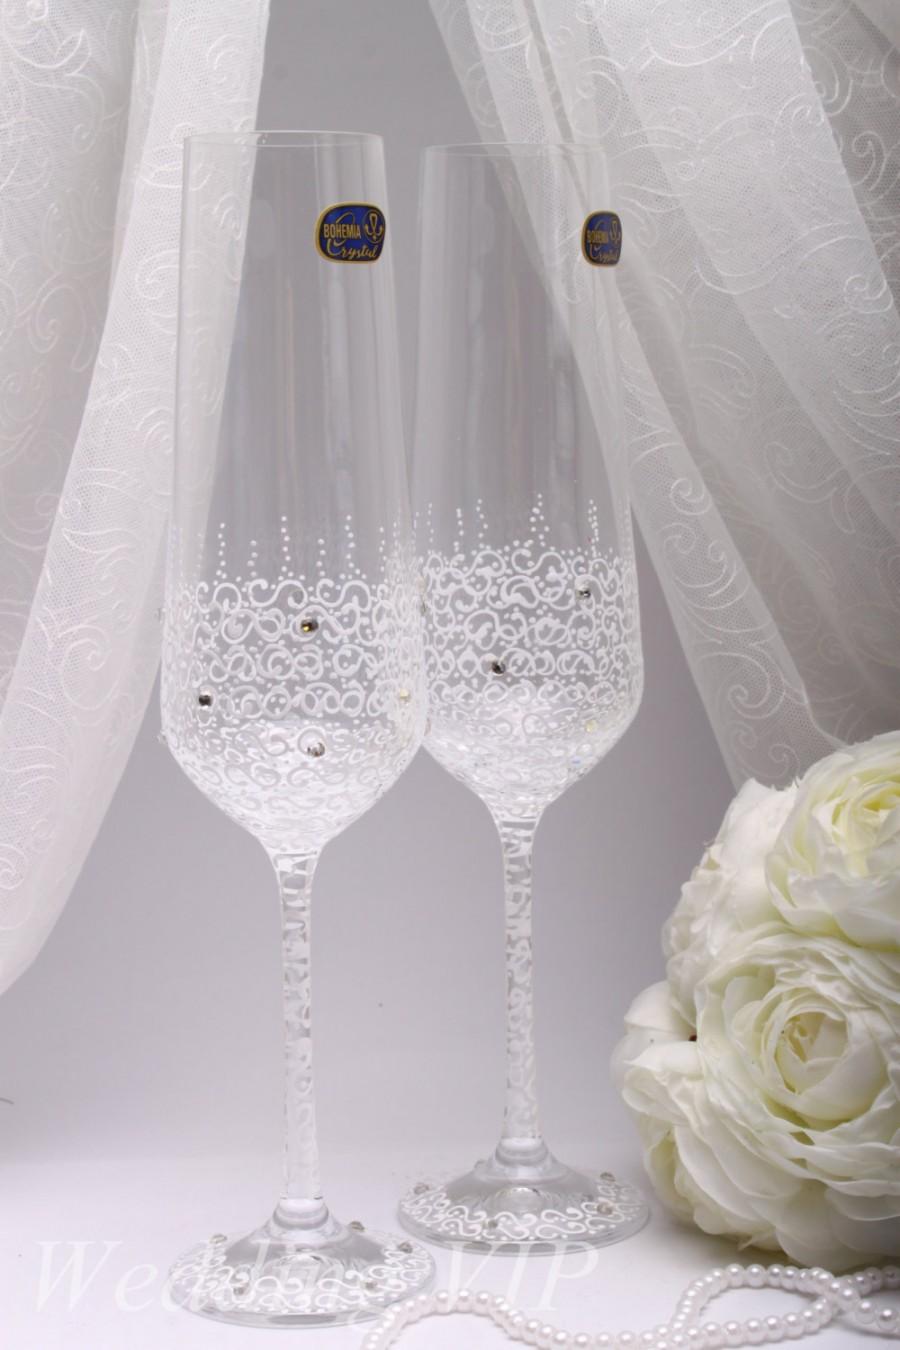 زفاف - Glasses wedding White LACE -HAND Painted- Personalized glasses Wedding Toasting Glasses champagne glasses Champagne Flutes Mr and Mrs glasse